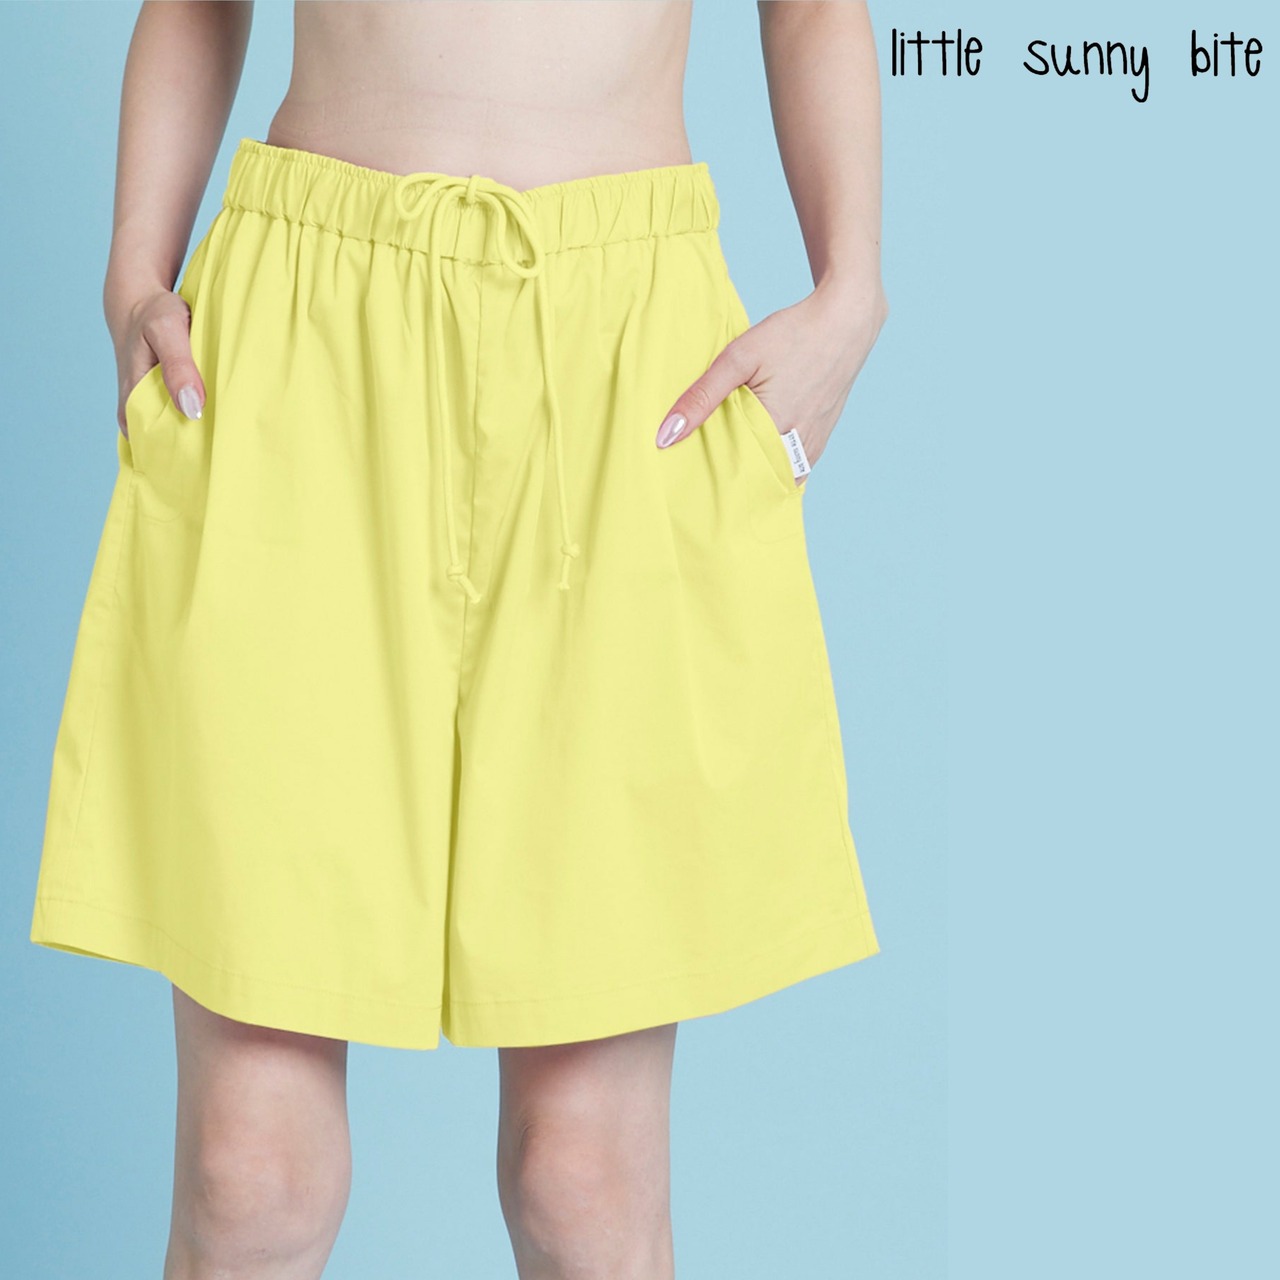 【Little sunny bite】Nylon short pants